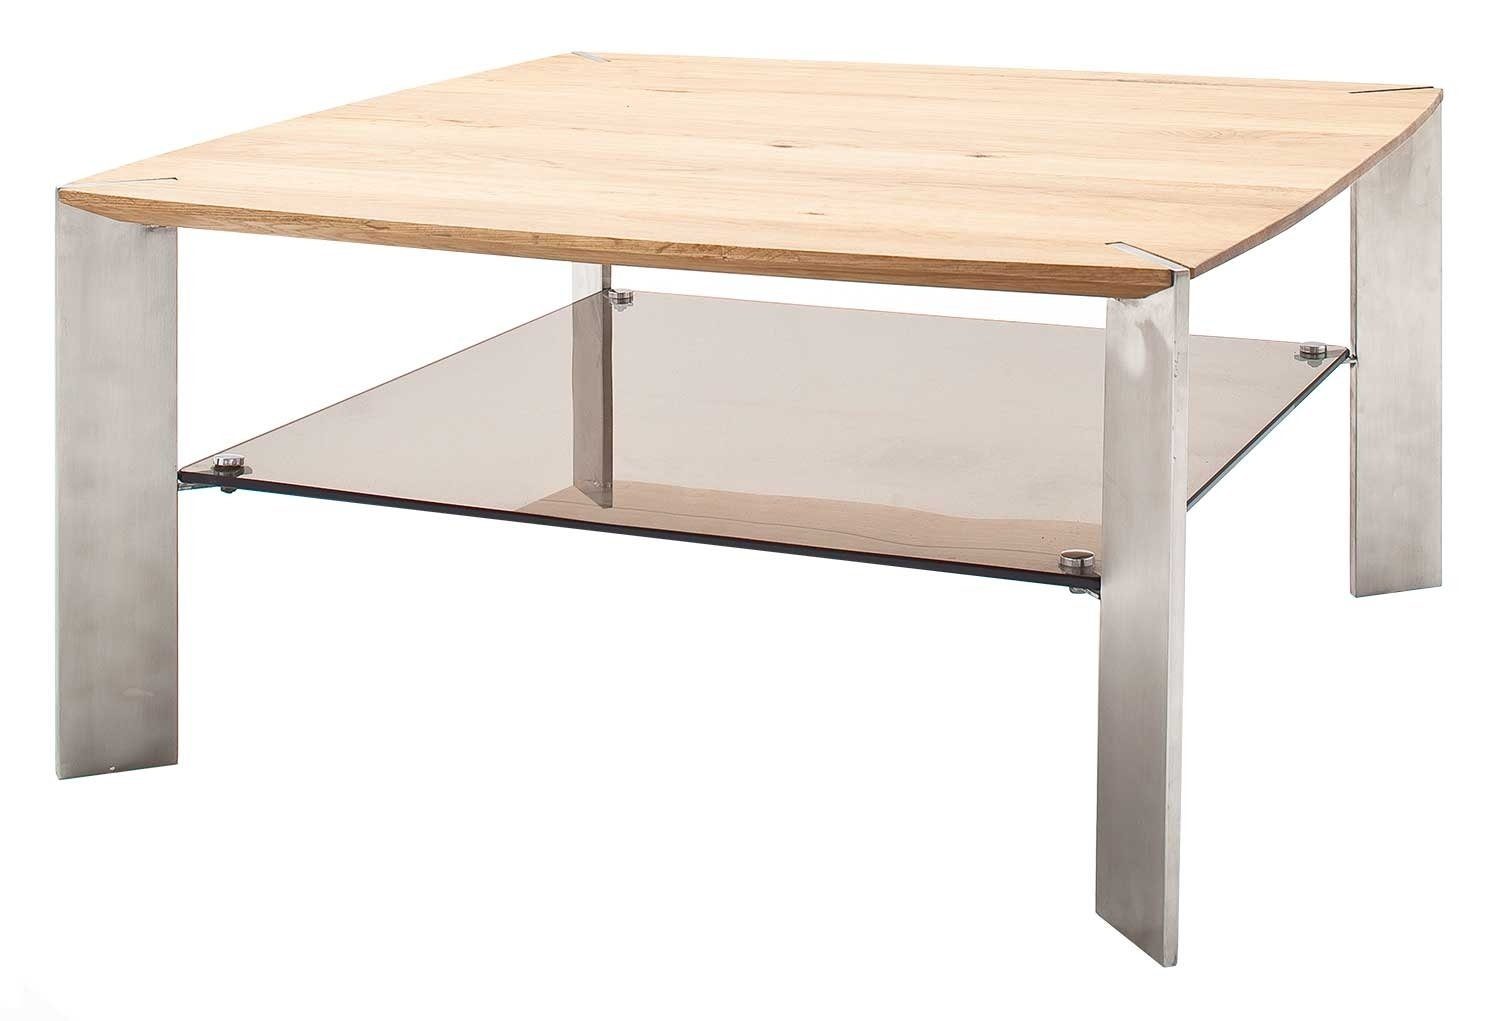 Tisch für Tischbeine MCA (Wohnzimmer cm, Edelstahl), Ablageflächen Fernbedienungen aus Ablage Nelia mit Couchtisch quadratisch, Asteiche 80x80 furniture bronziert, Glas, massiv,